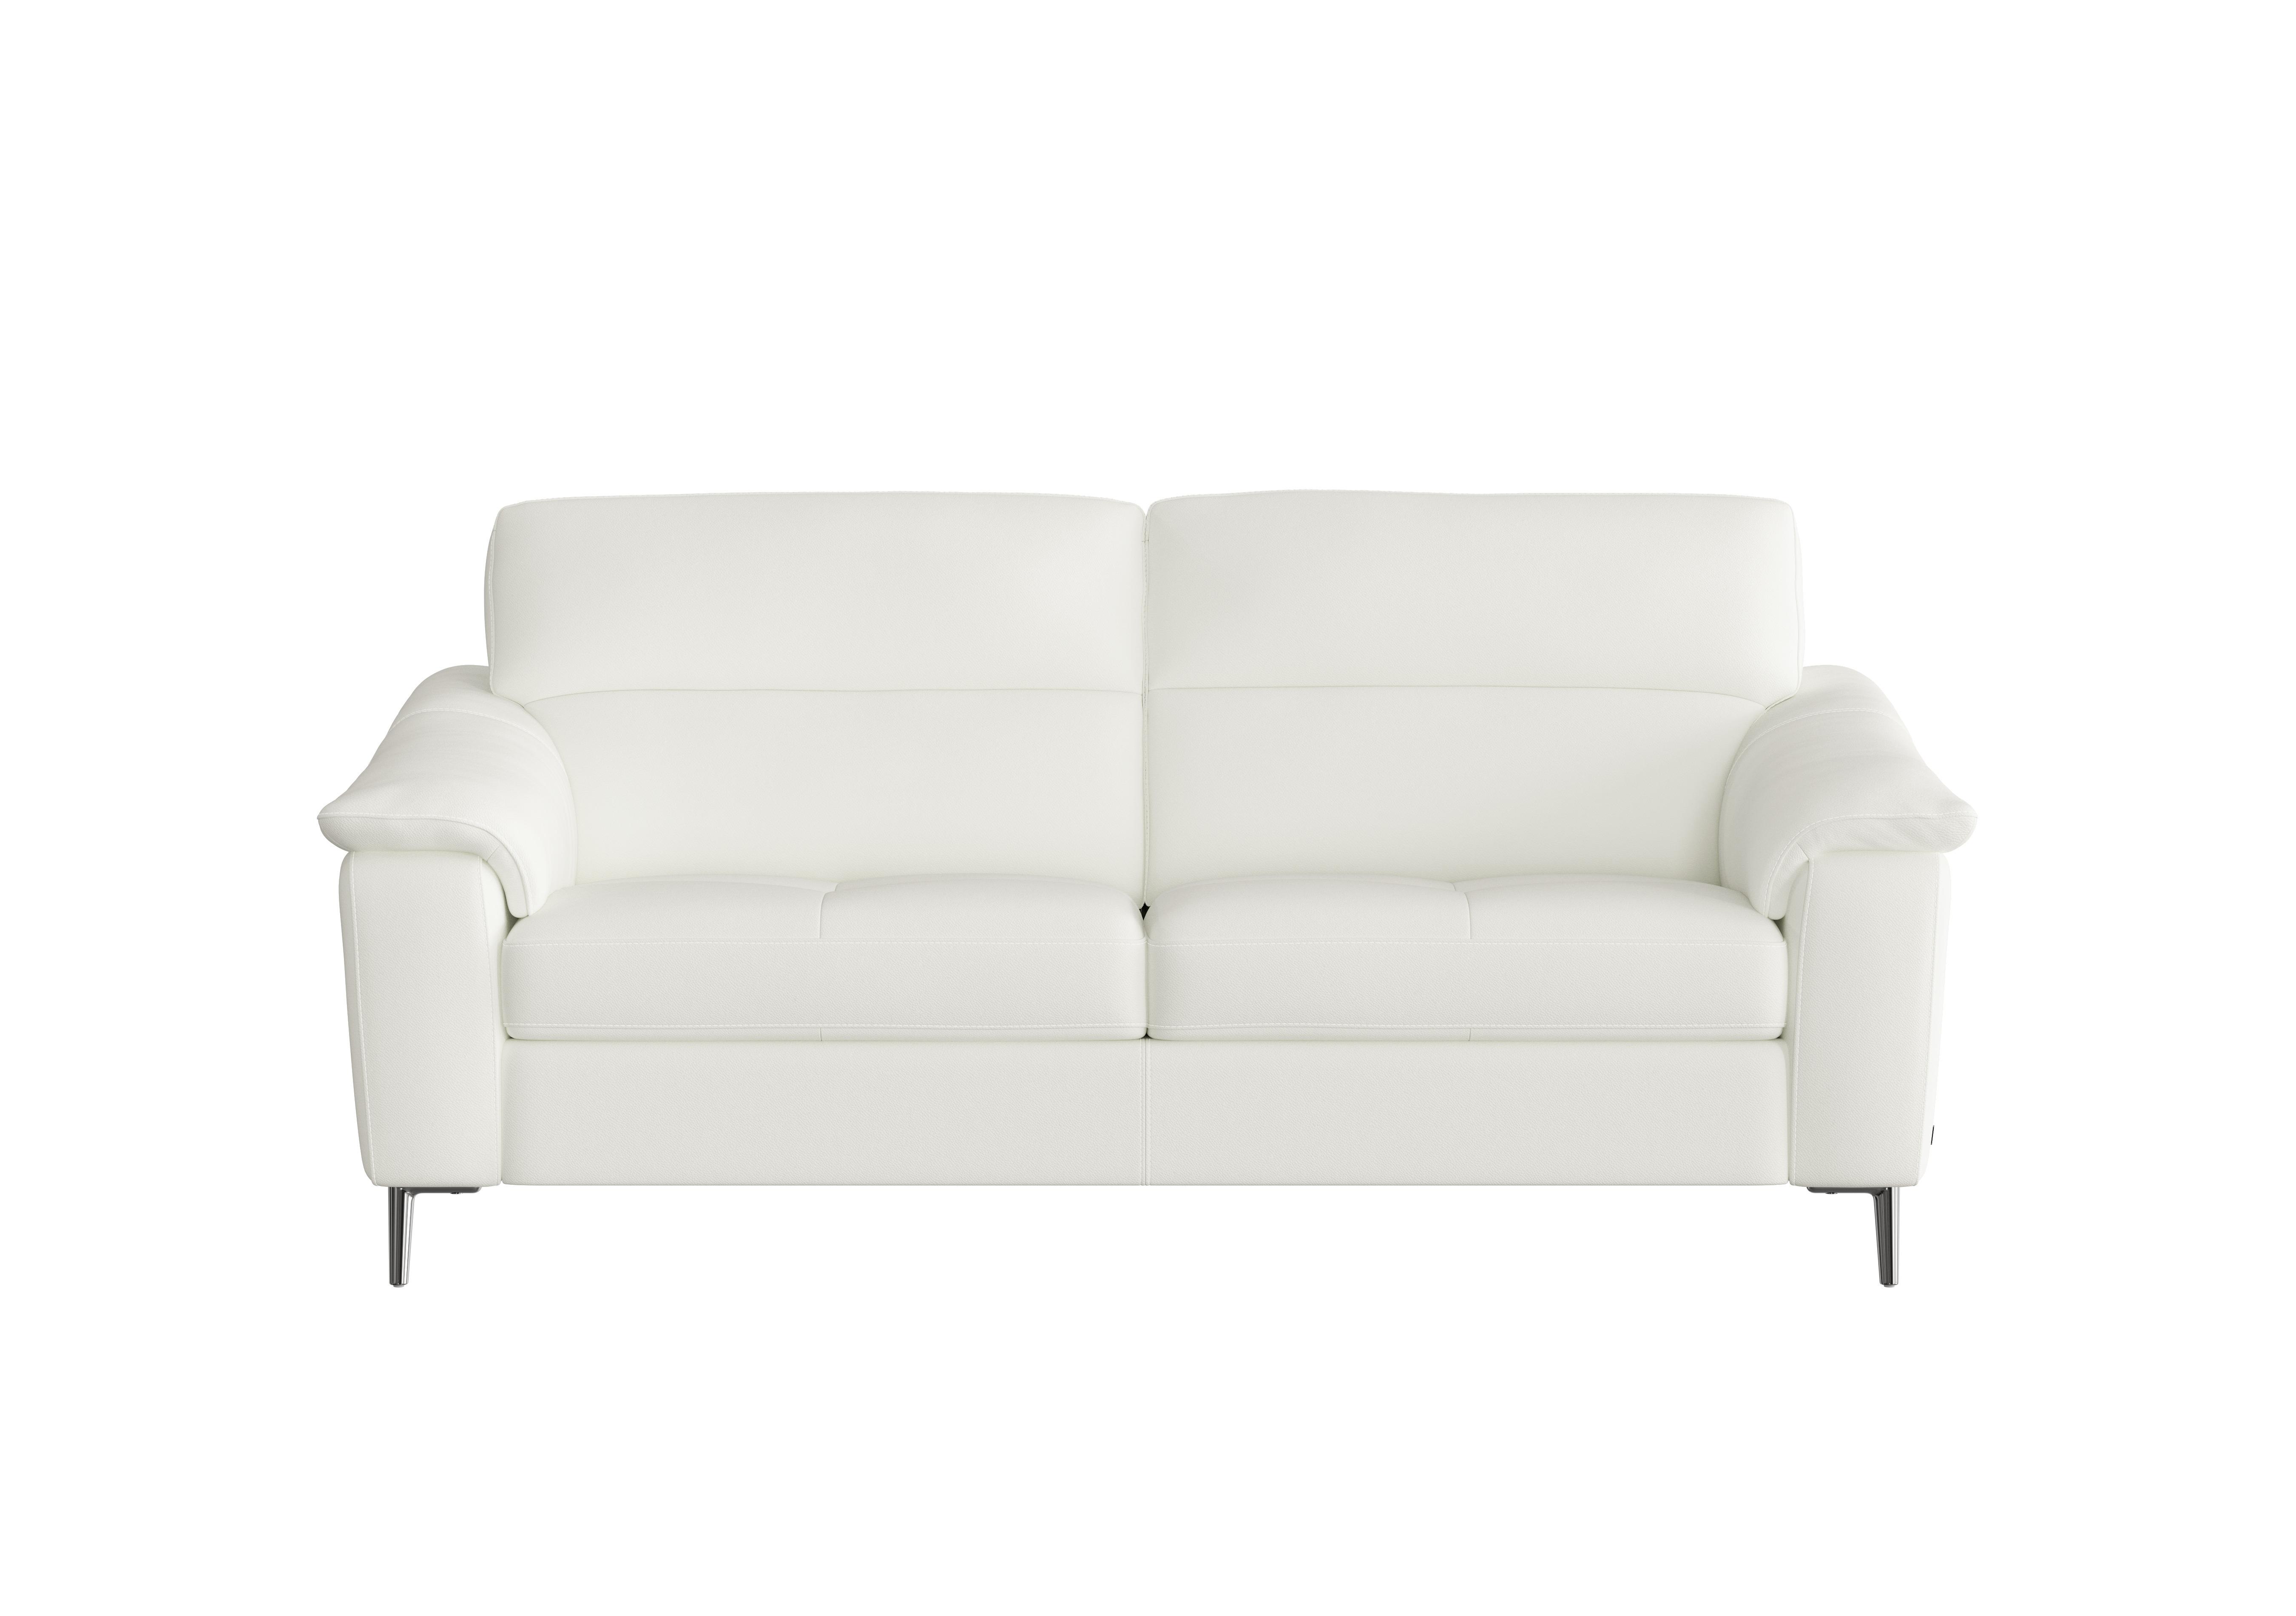 Maldini 3 Seater Leather Sofa in Torello 370 Bianco Puro on Furniture Village